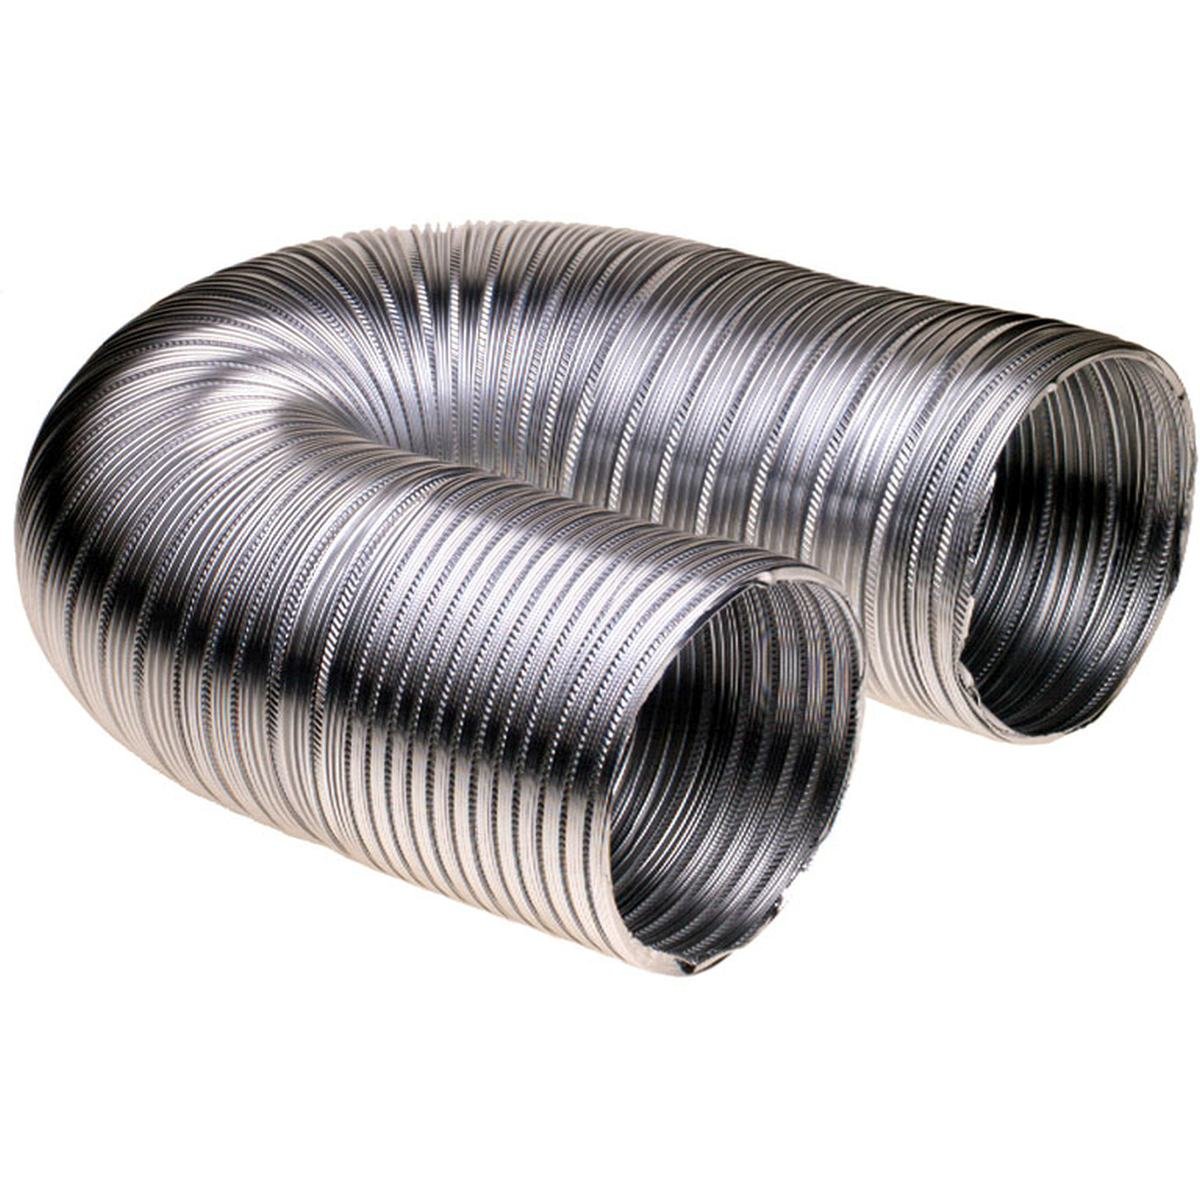 Ventilasjonsslange i aluminium Ø127 mm. 1,5 meter